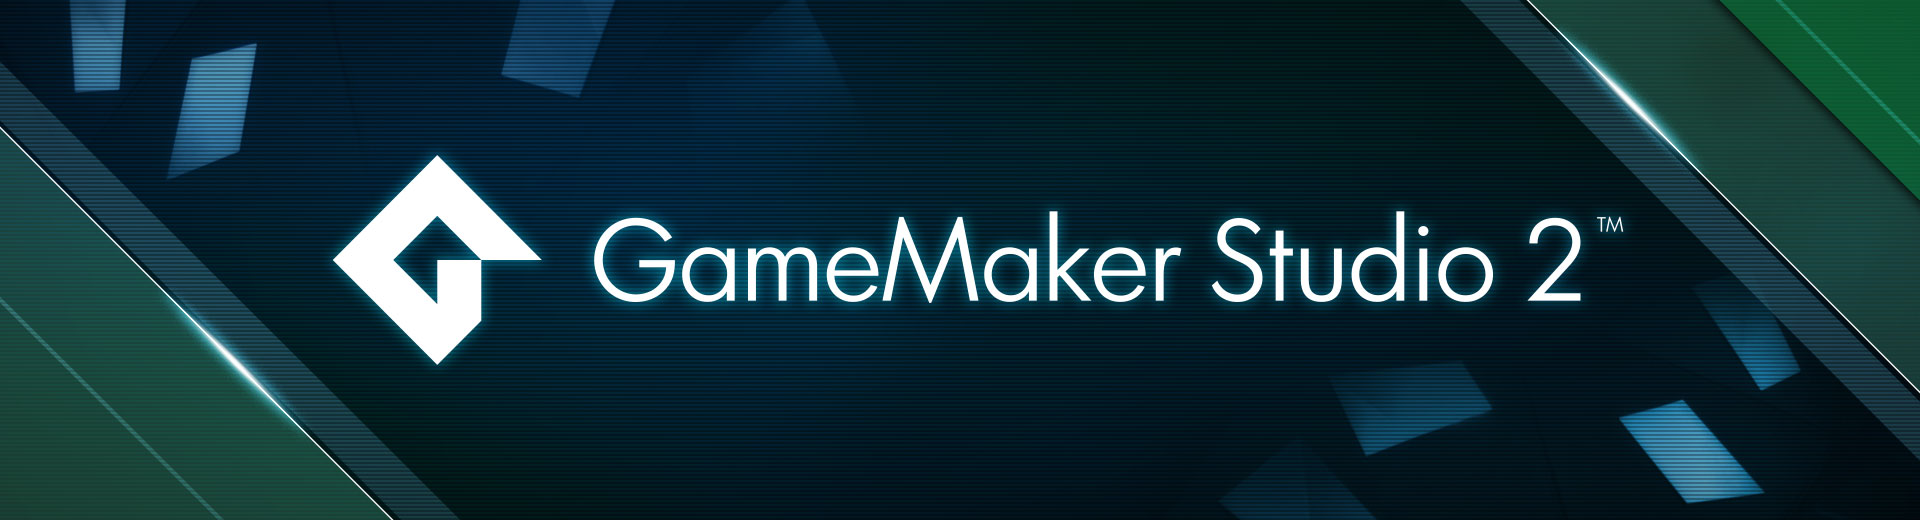 game maker 1.4 license key giveaway